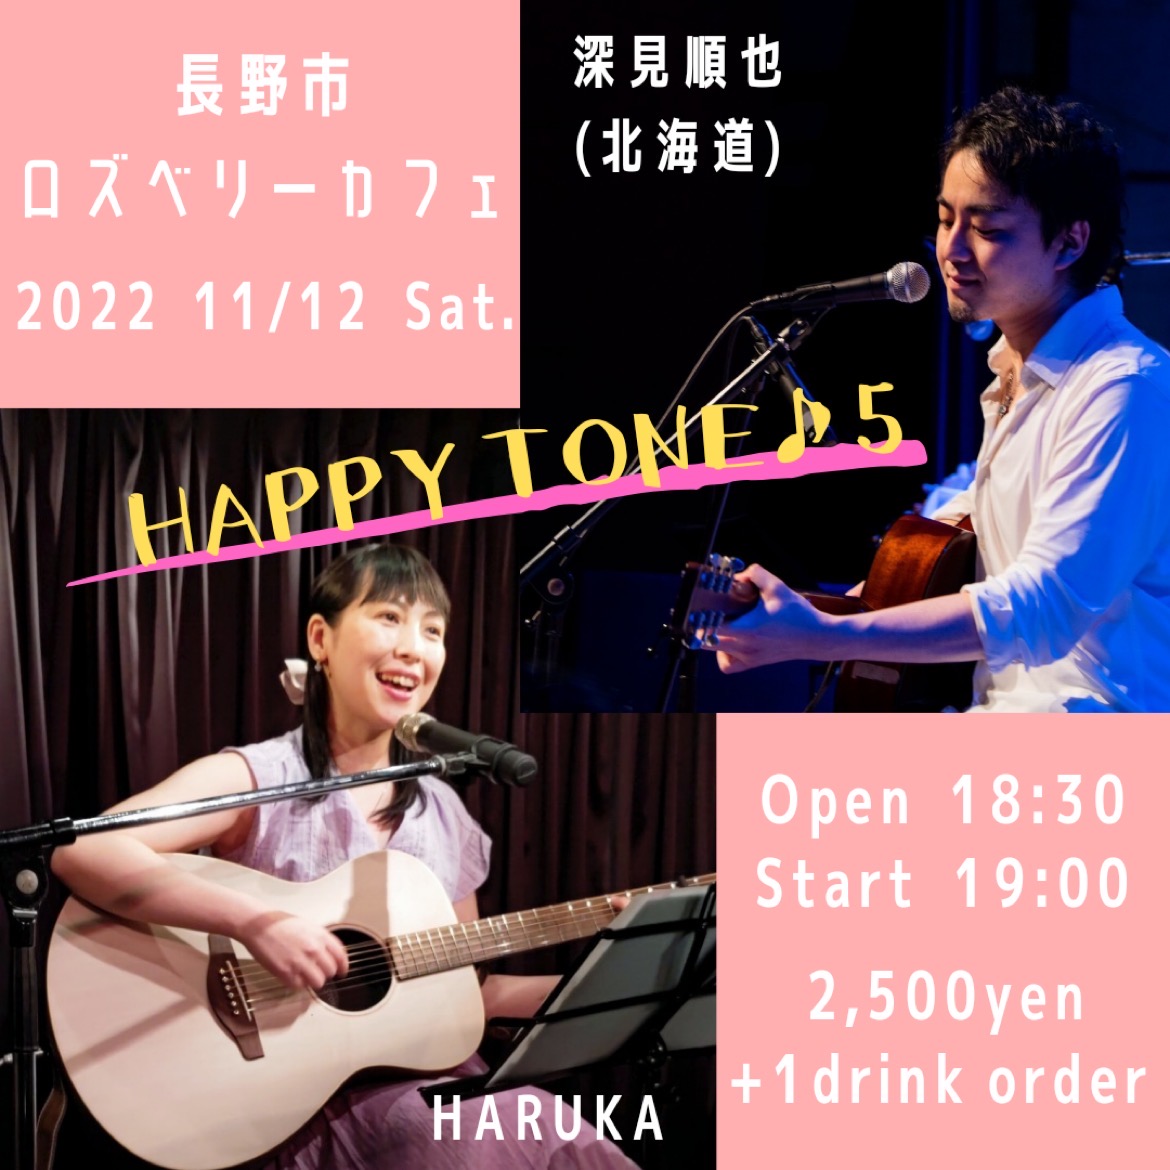 HAPPY TONE ♪５